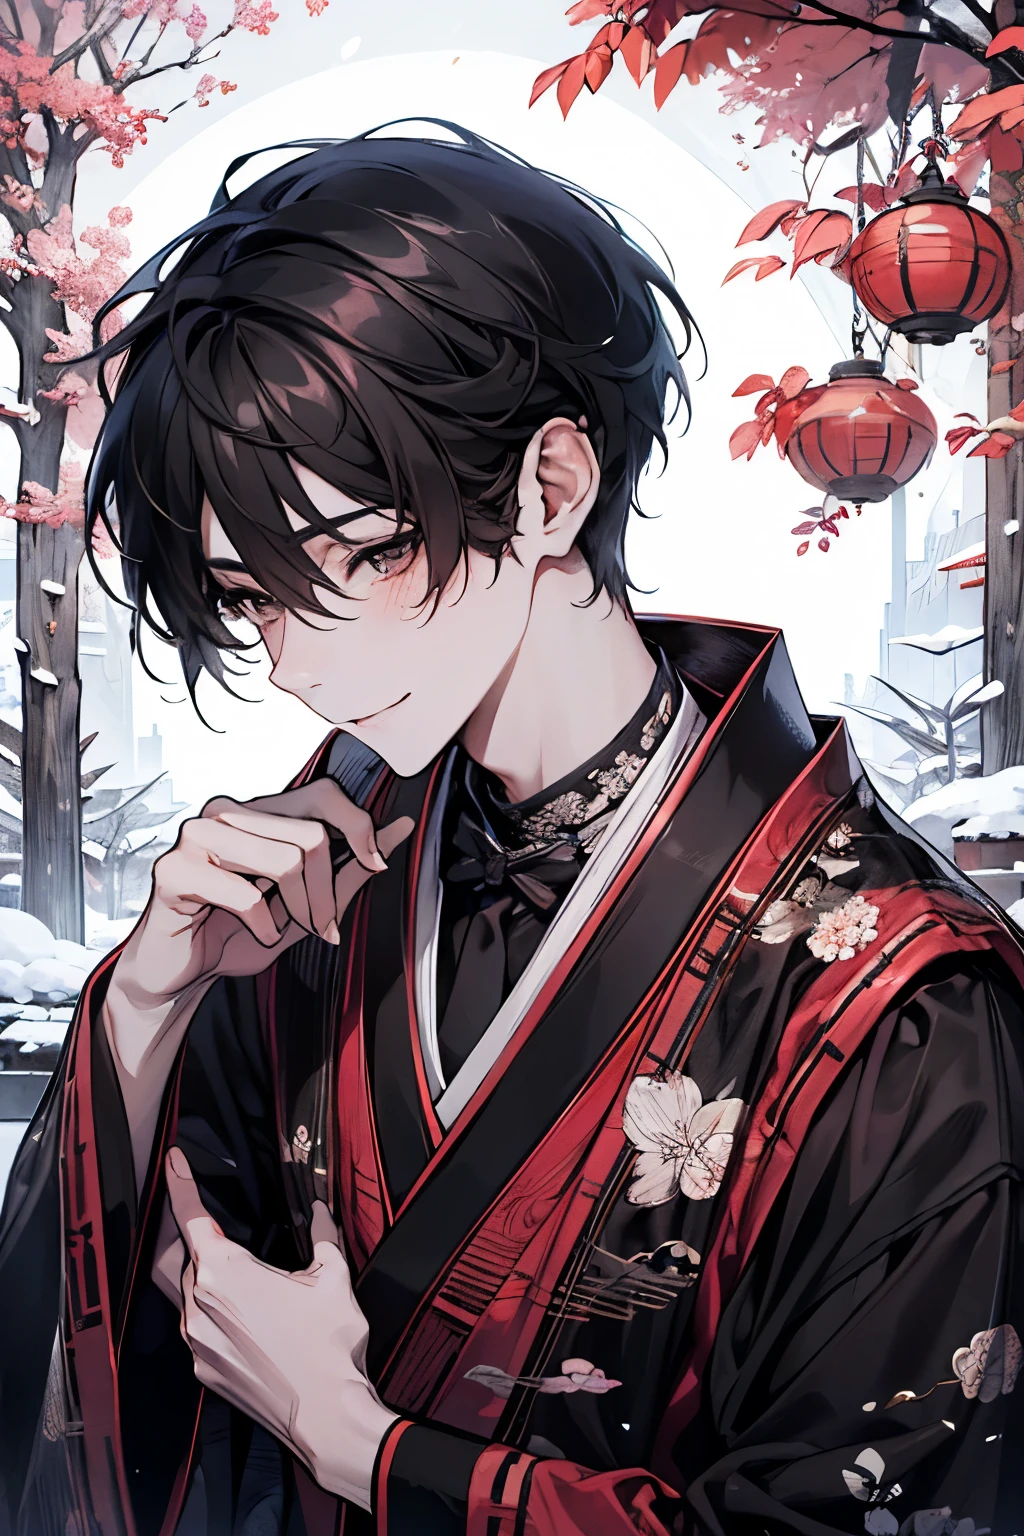 Ein hübscher junger Mann feiert das neue Jahr in einem traditionellen japanischen Ambiente. Der Moment, bevor er eine schwarze Katze hochhebt und küsst. Ein ruhiger, schneebedeckter Garten. Im Garten gibt es eine kleine Kiefer und eine mit Schnee bedeckte Steinlaterne, Sanft erleuchtet vom frühen Morgenlicht des neuen Jahres. Seine Merkmale sind glattes schwarzes Haar, Im klassischen Stil gestylt, und tiefbraune Augen, die den hoffnungsvollen Anfang widerspiegeln,erröten,lächeln